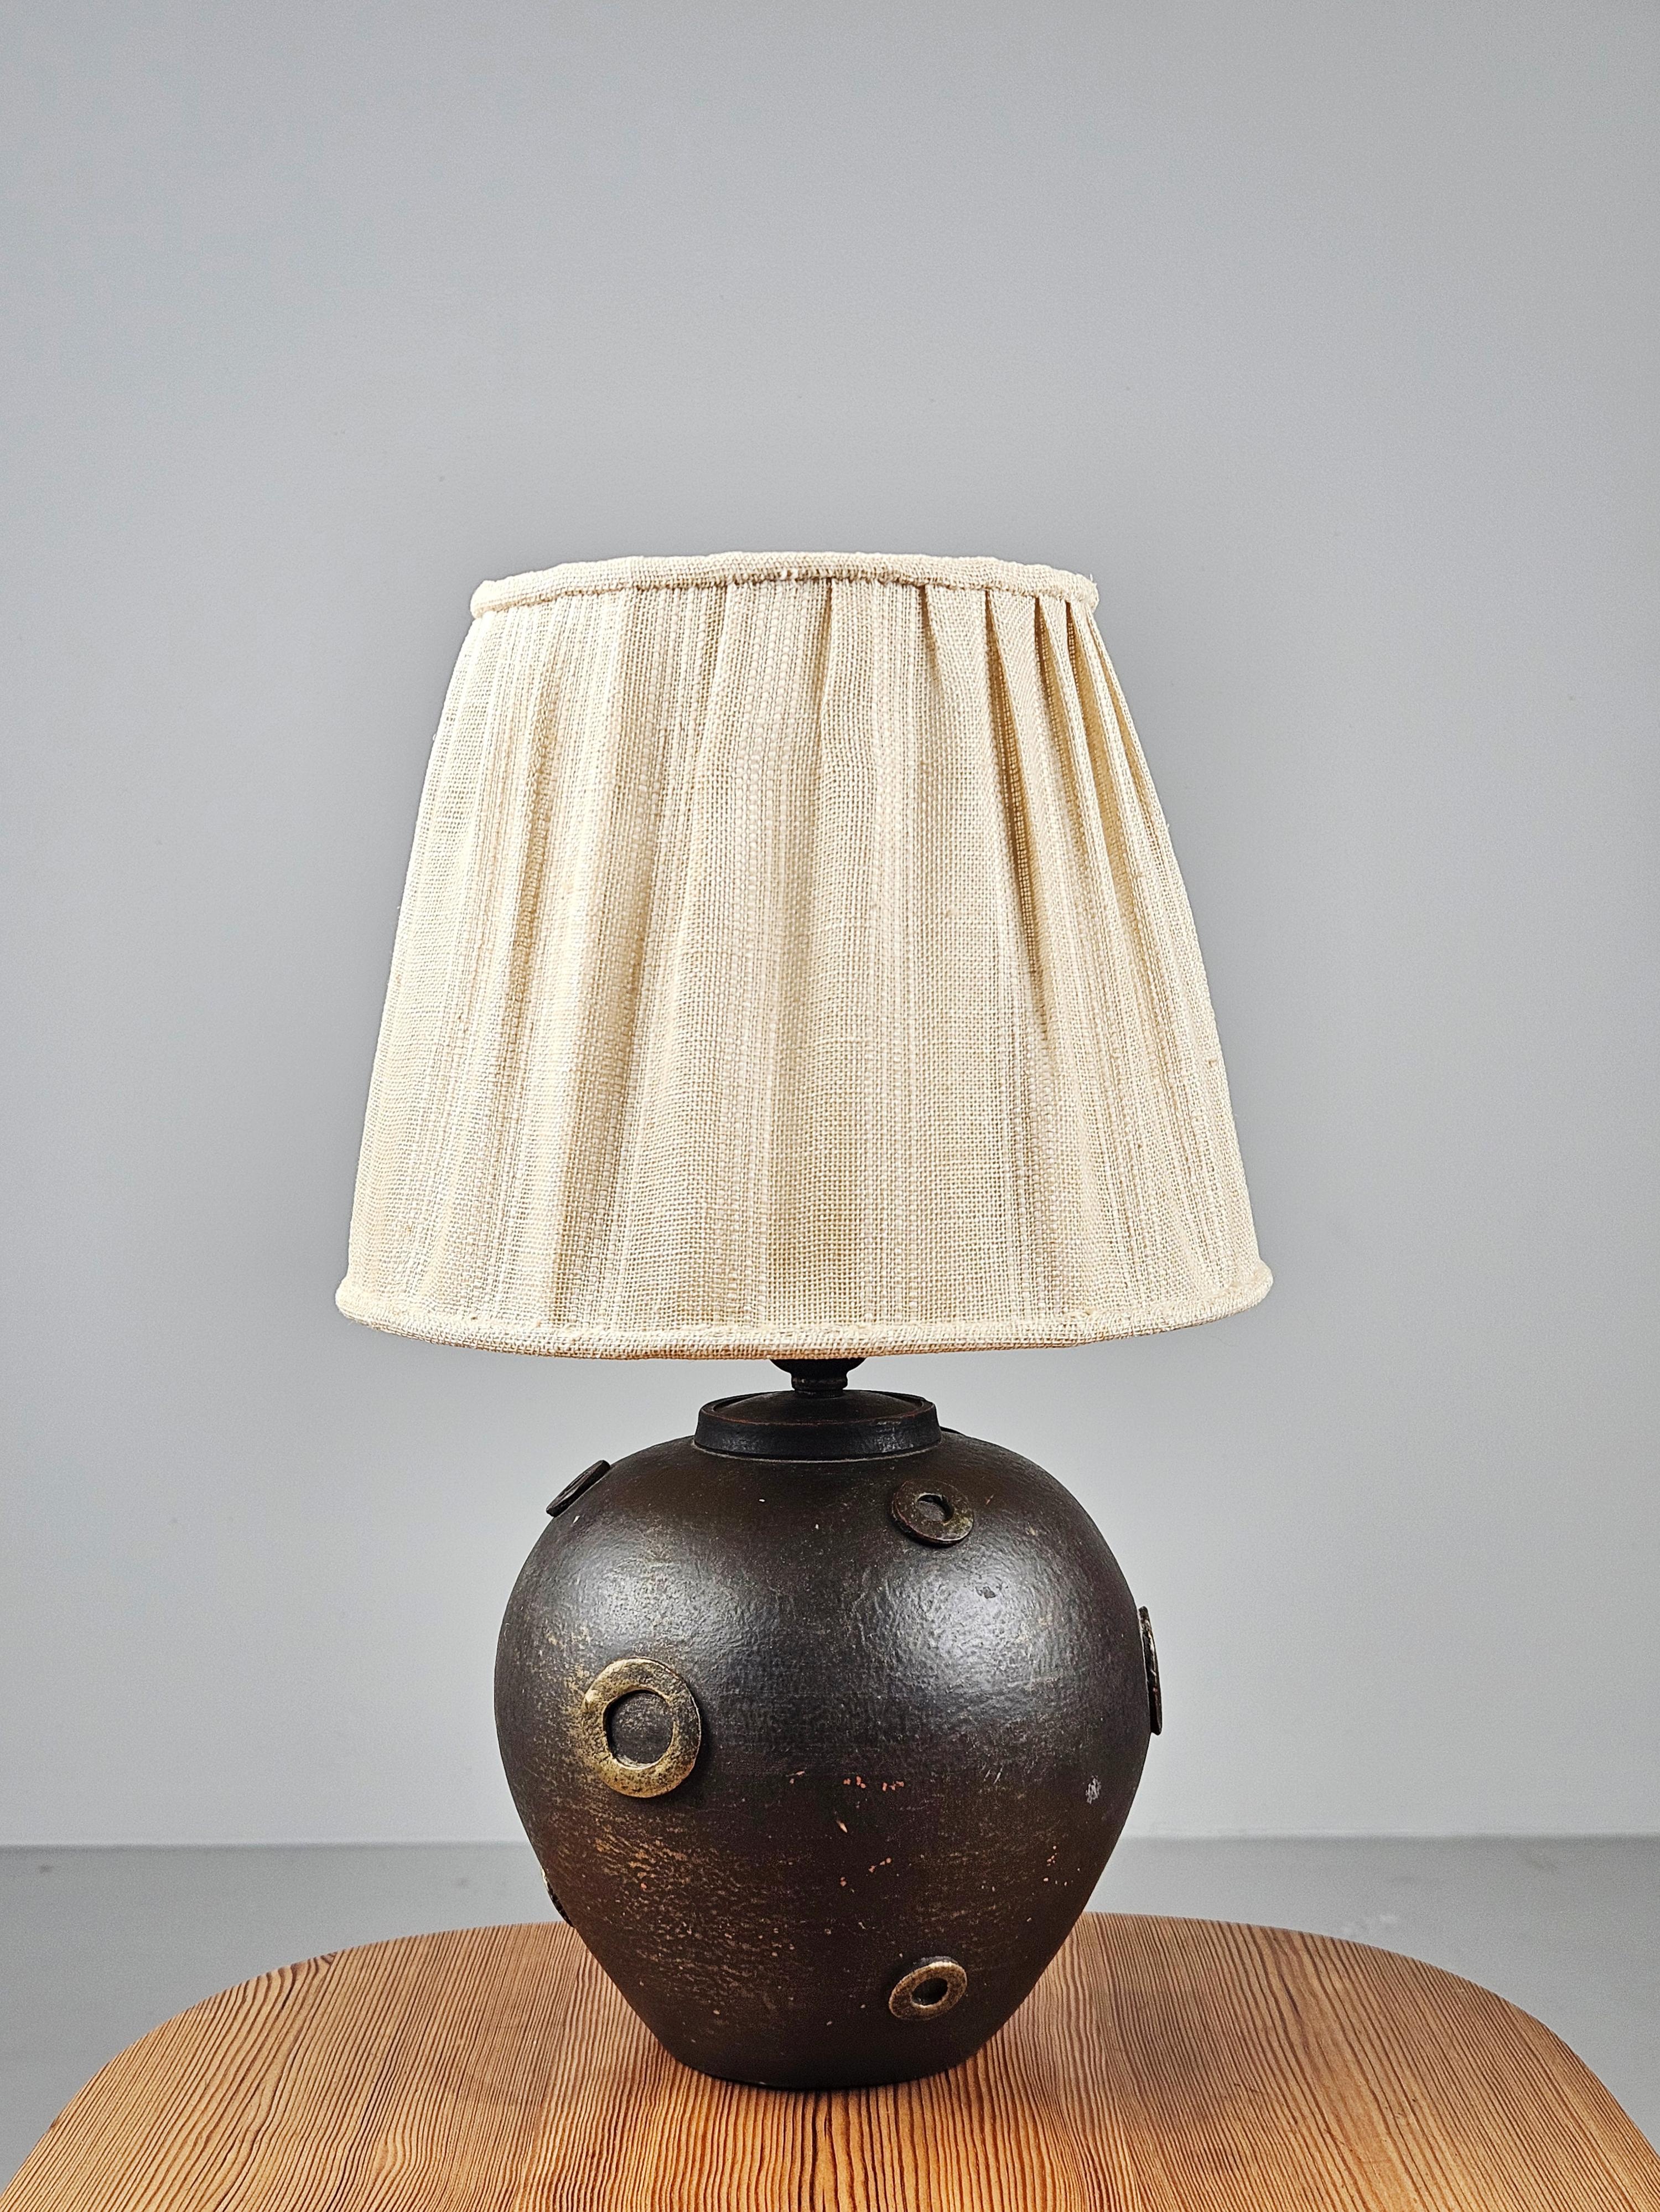 Sehr seltene anonyme Tischlampe. Produziert in Schweden in den 1930er Jahren.

Hergestellt aus Keramik mit schönem modernistischem Design. 

Nicht signiert. Das Design ähnelt den Arbeiten von Jerker Werkmäster, dem künstlerischen Leiter von Nittsjö